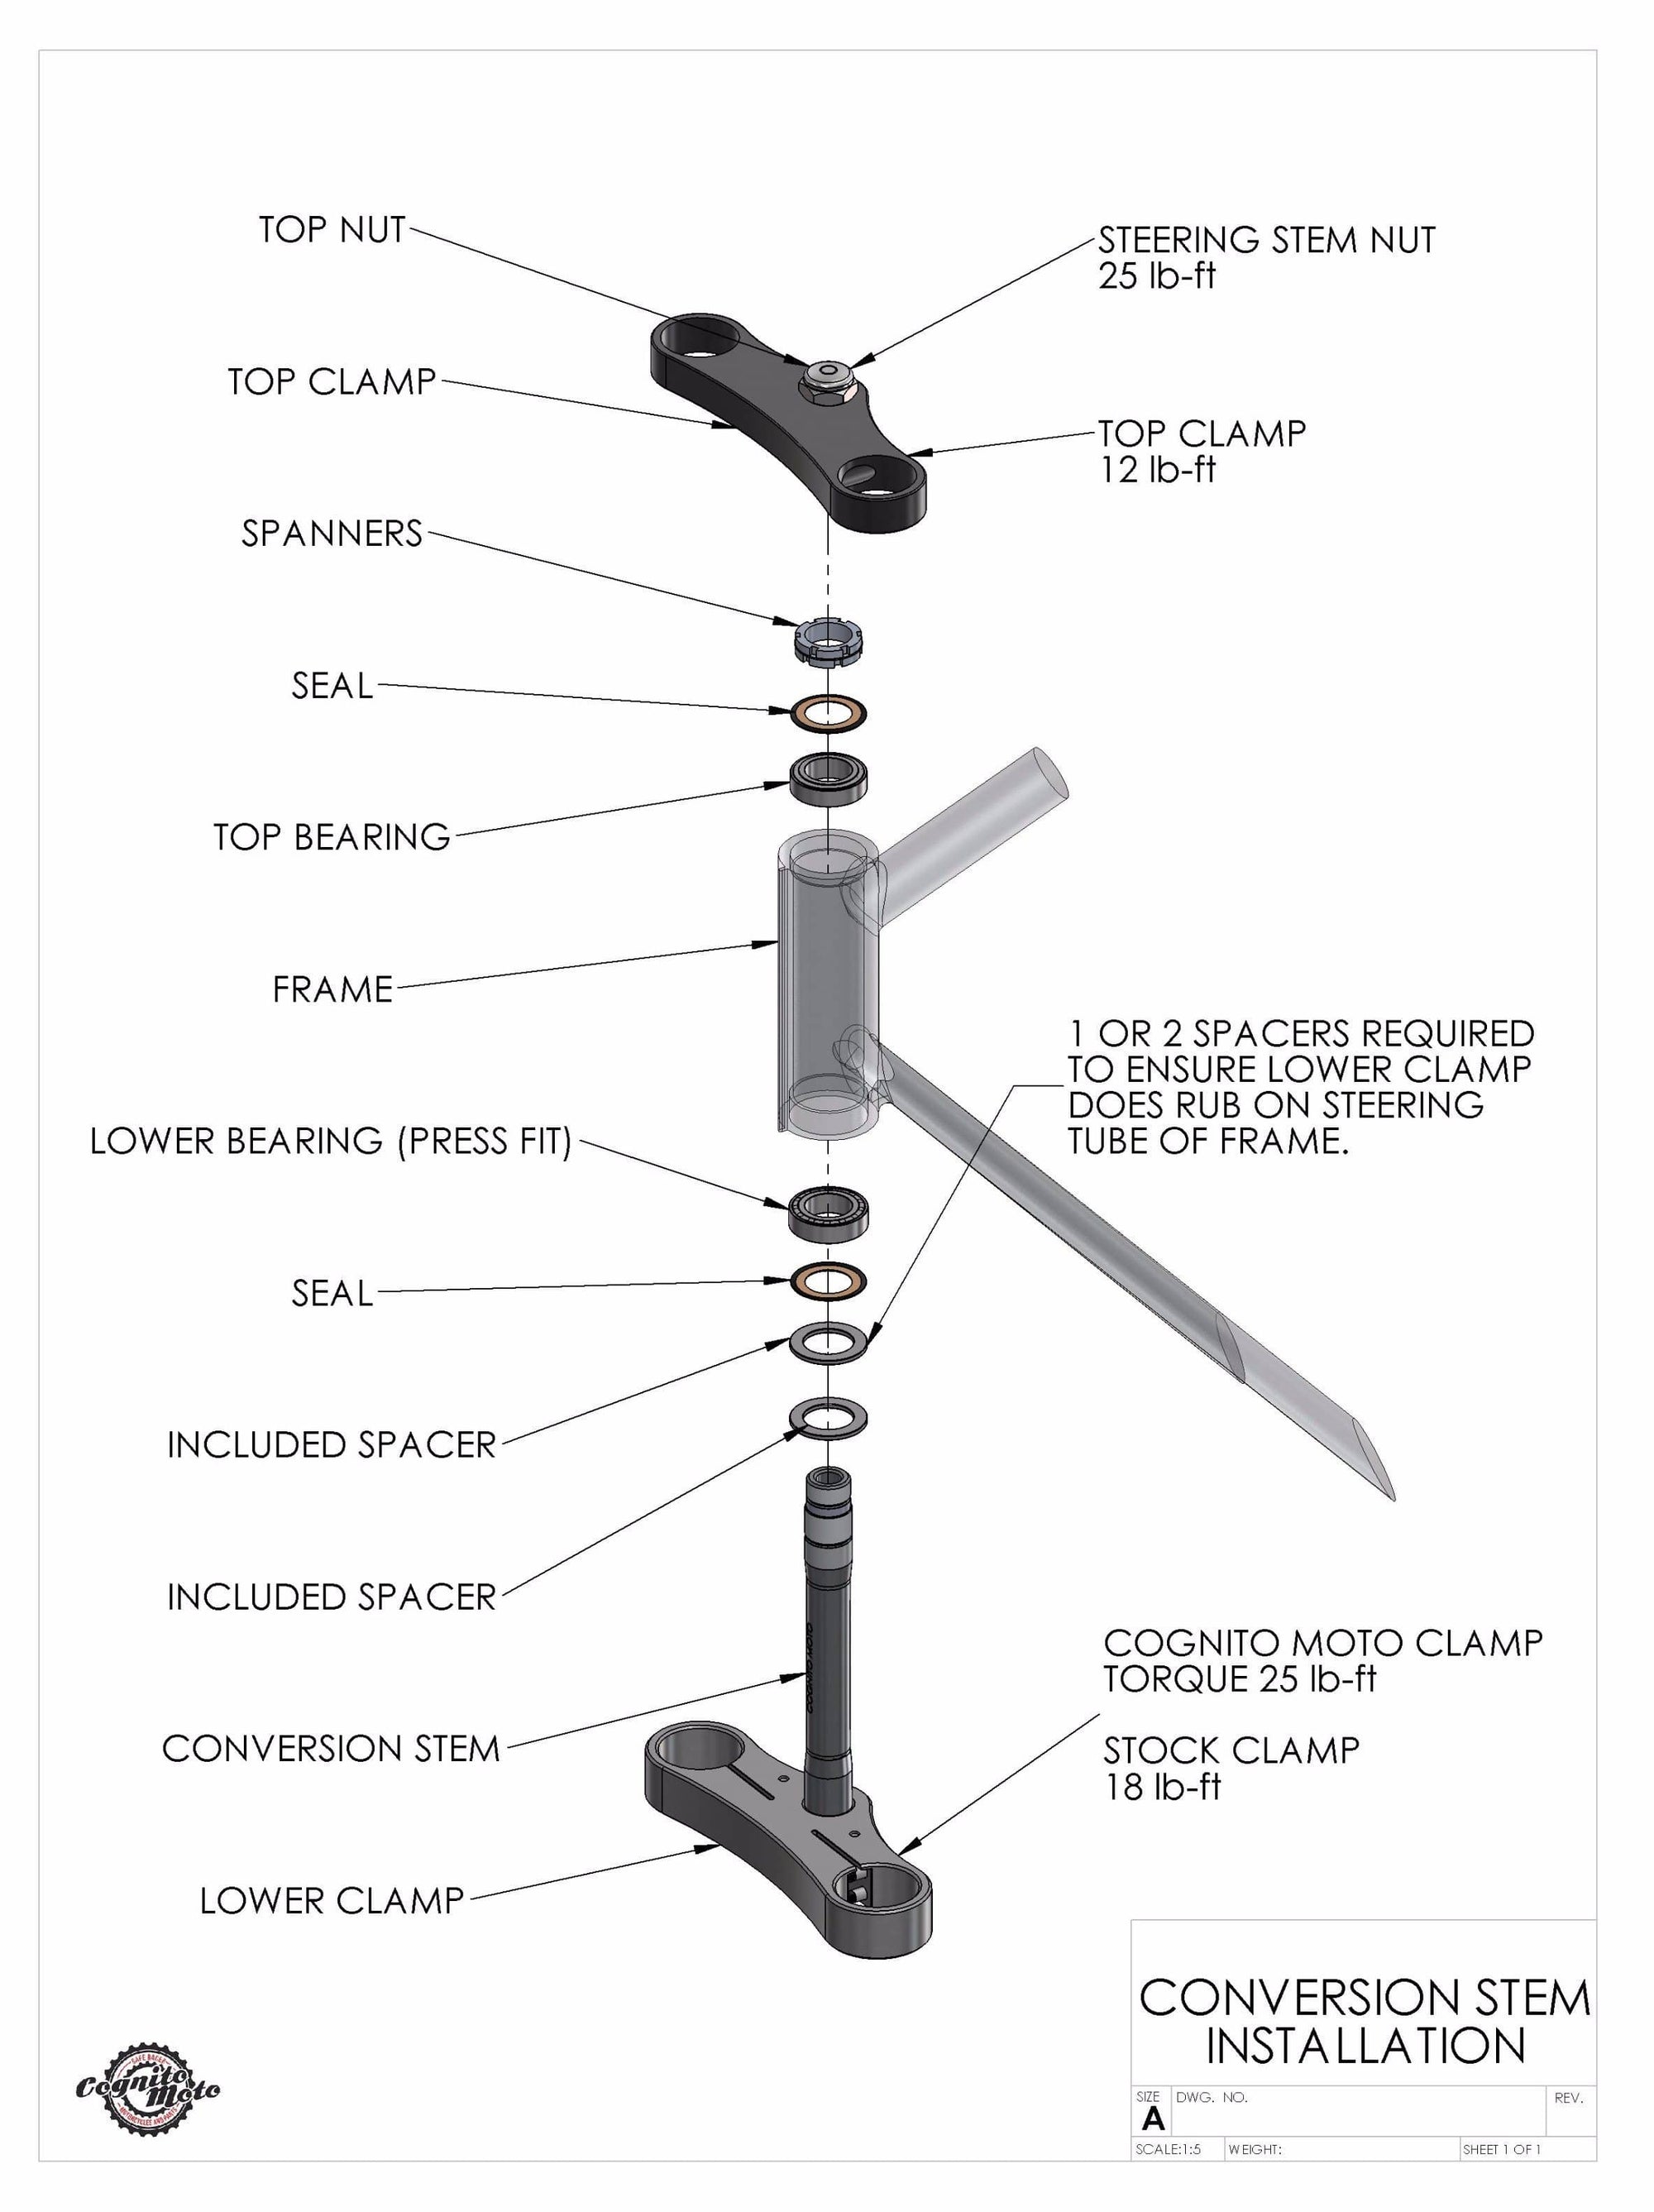 GSX-R Fork on Suzuki GS550 Frame Conversion Stem